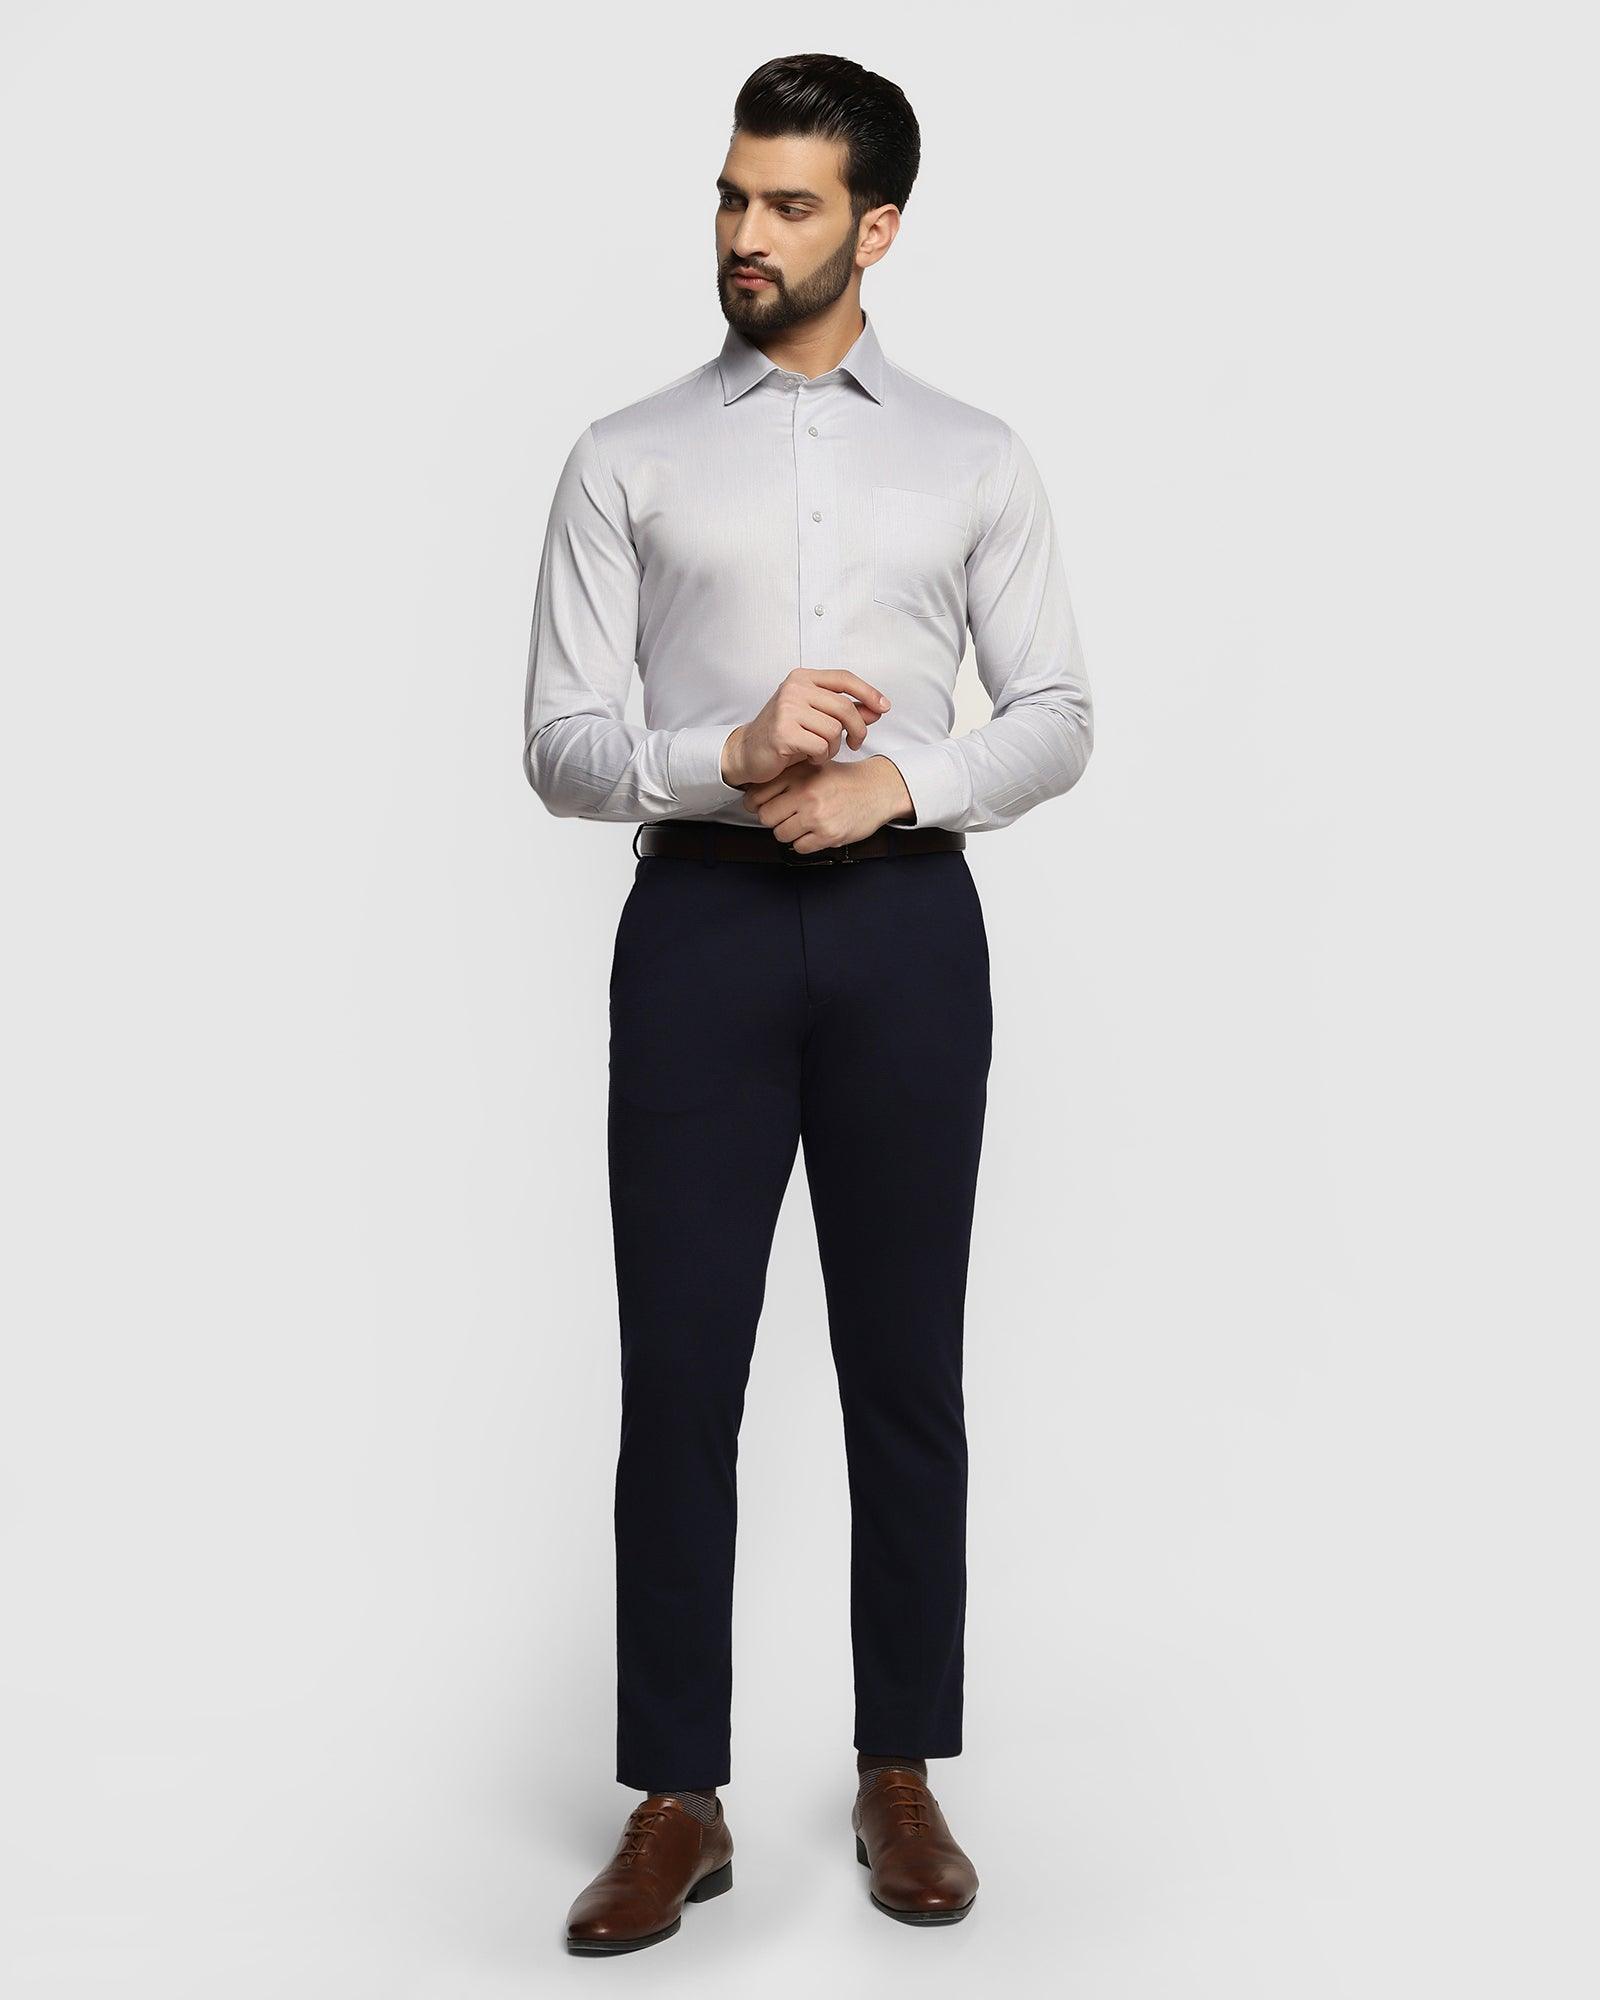 Amazon.com: Boy Formal Black Suits 5 Pieces Slim Fit Dresswear Suit Set  Blazer Pants Shirt Vest with Tie for Boys Size 2: Clothing, Shoes & Jewelry